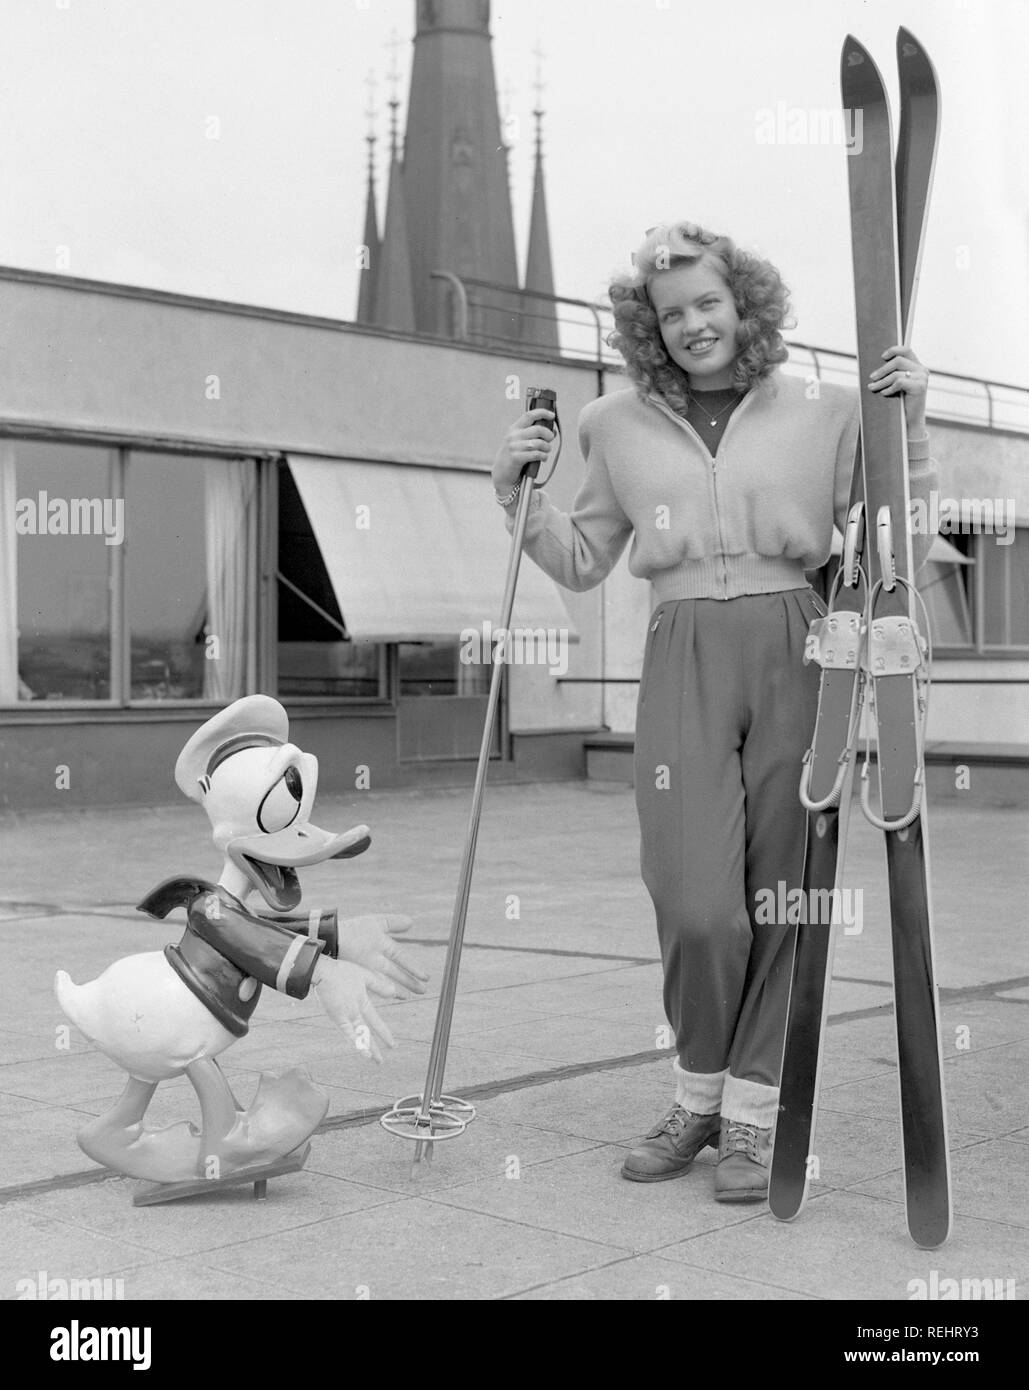 Sports d'hiver dans les années 1950. Une jeune femme blonde avec son ciel, poteaux et des chaussures ainsi qu'une figure de Donald Duck. Suède 1952. Kristoffersson Photo ref 179A-1 Banque D'Images